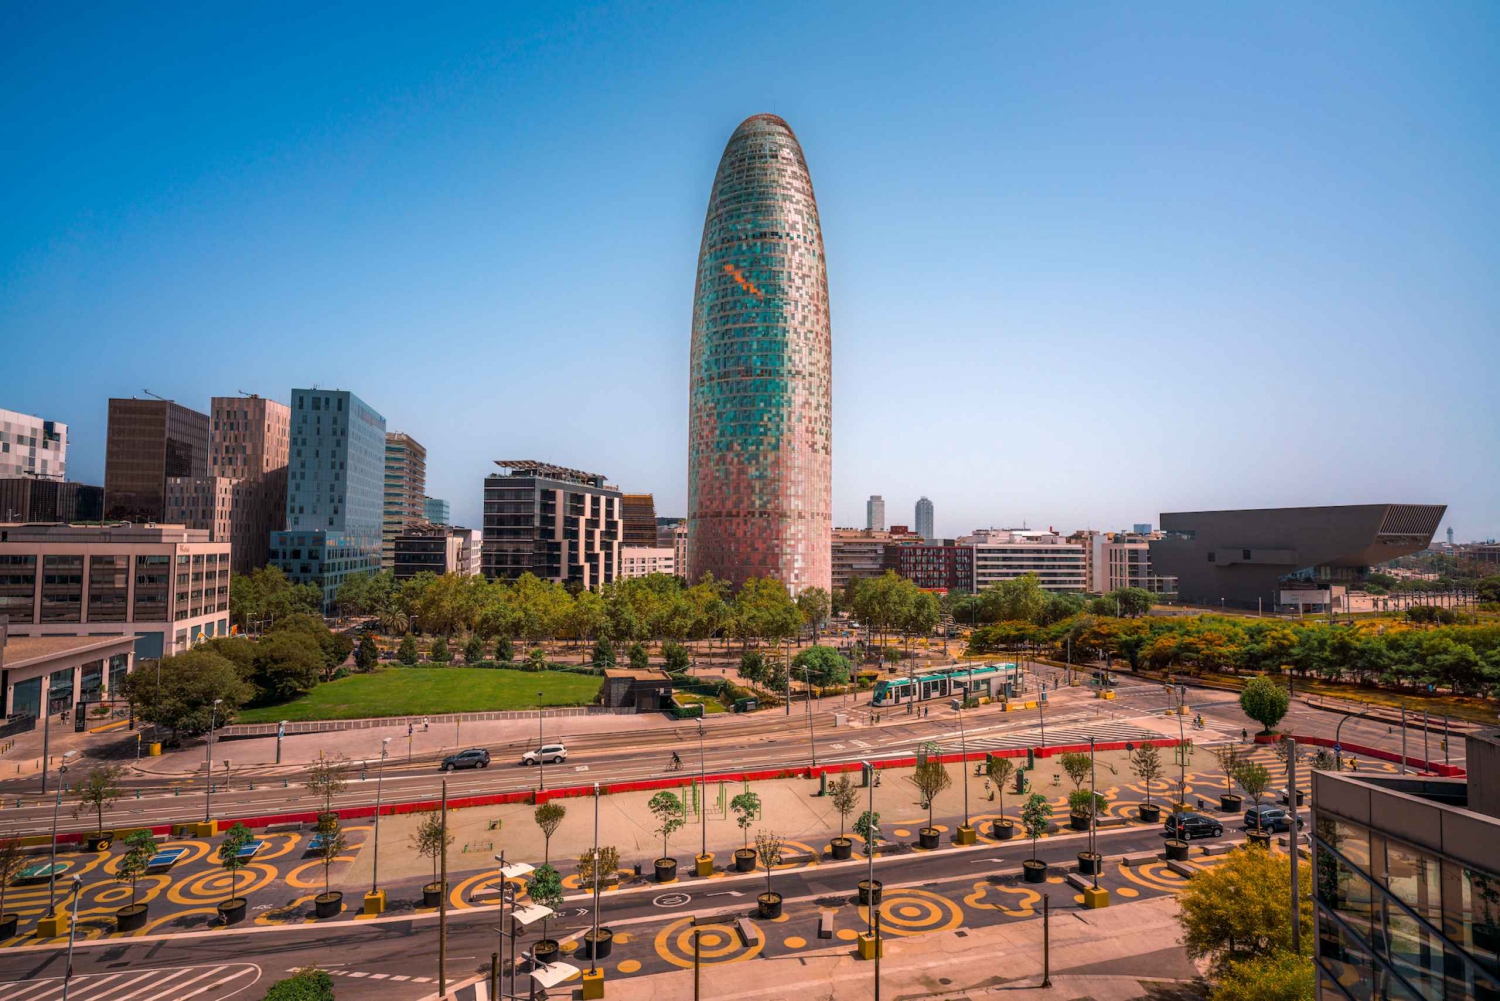 Barcelona: ingresso sem fila para o Mirador Torre Glòries